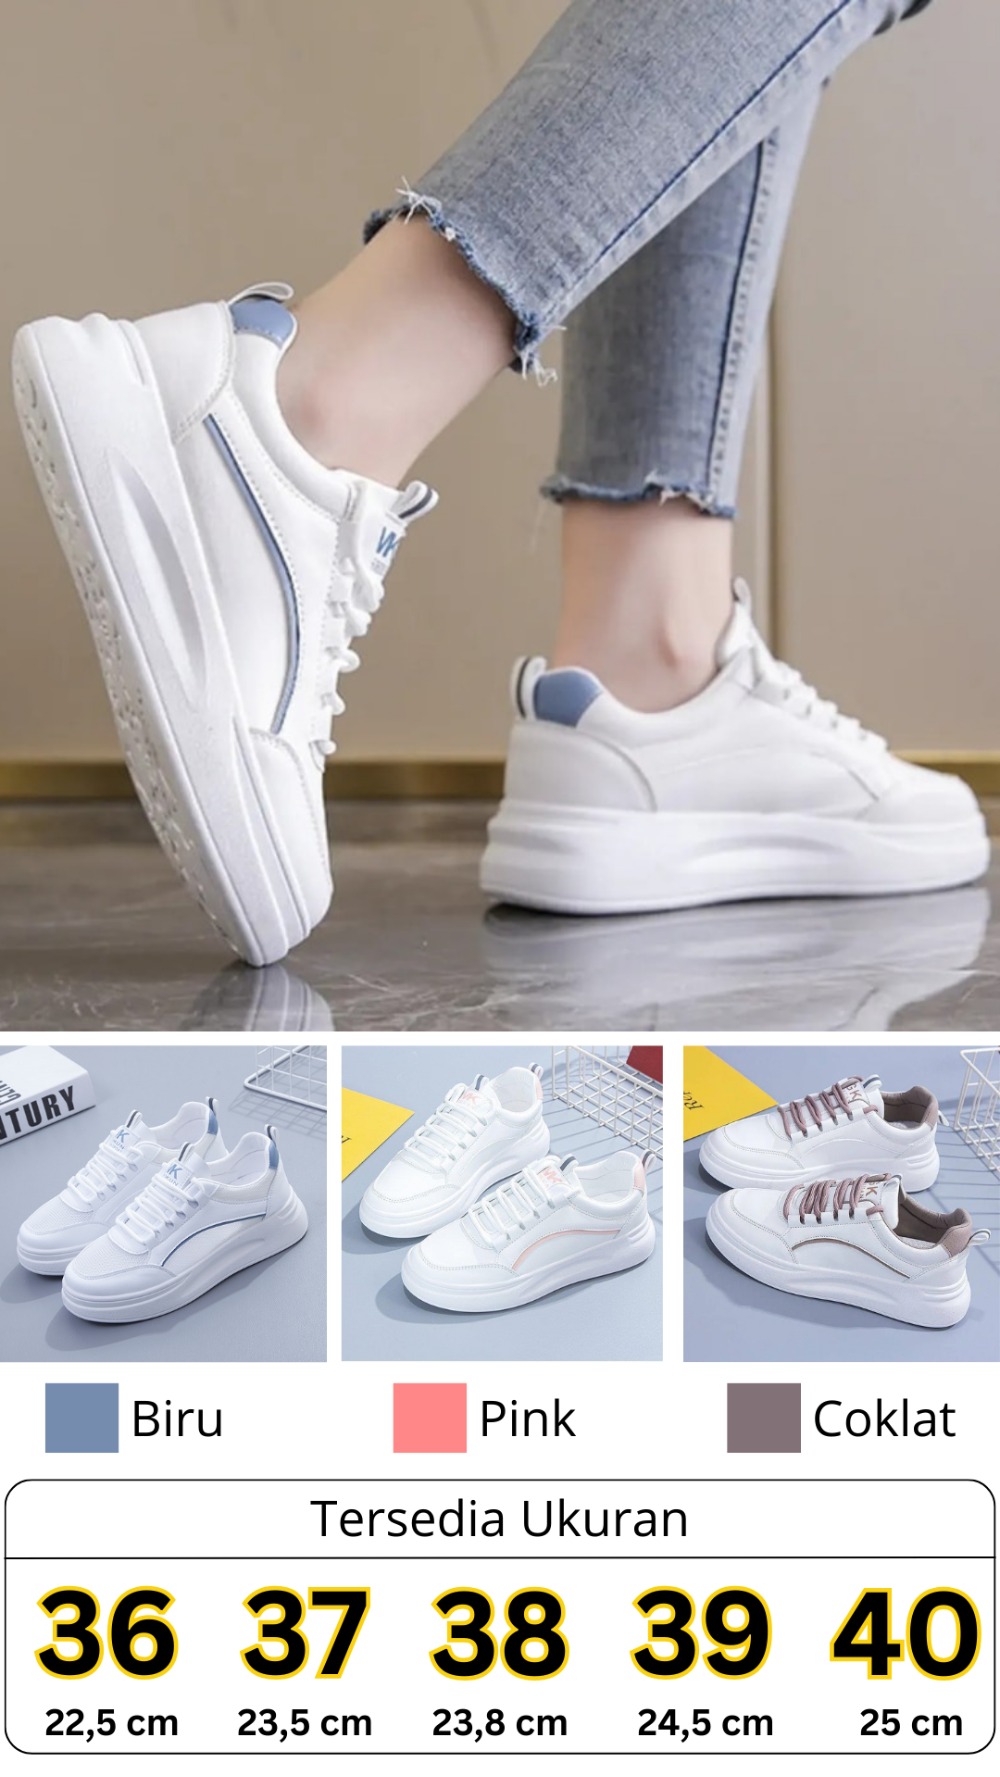 Warna & Ukuran Sneakers Fashion